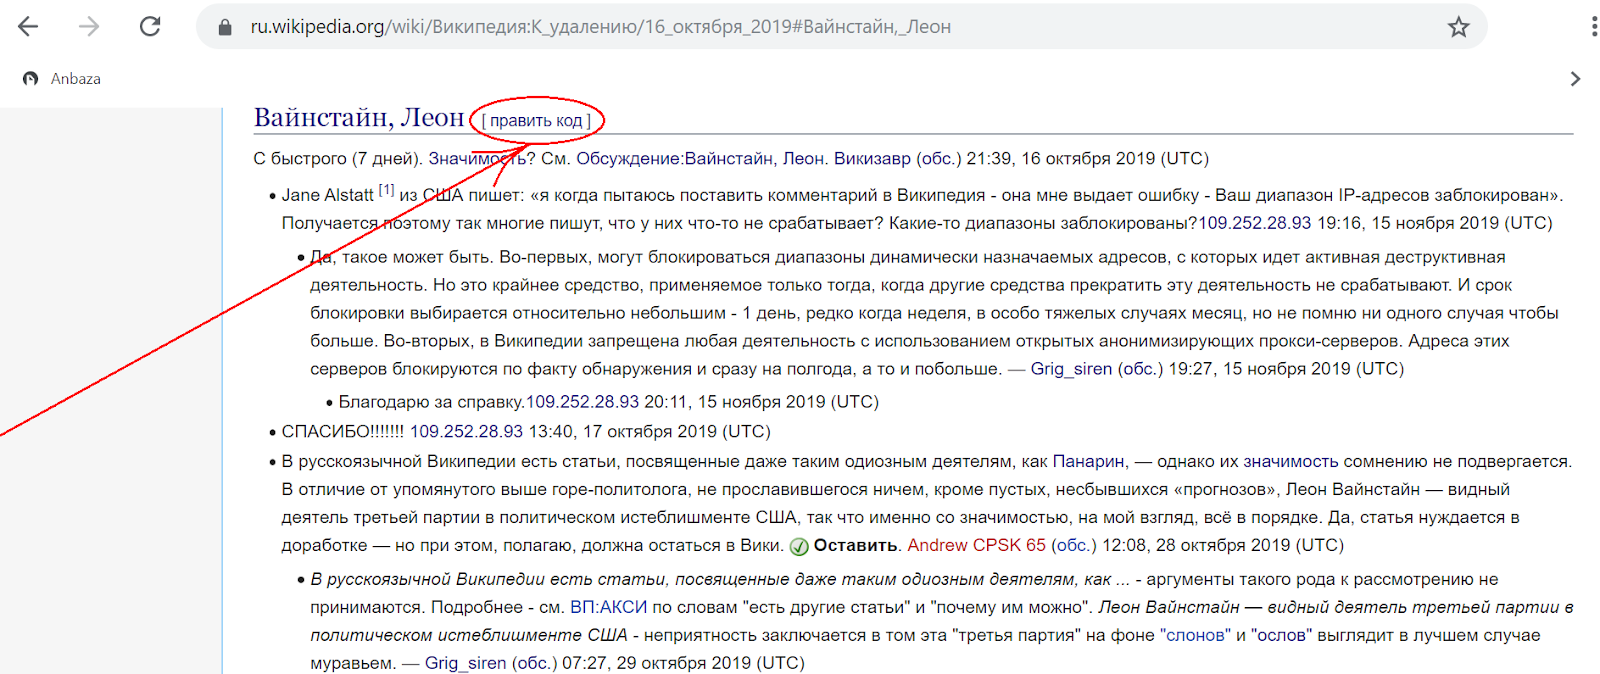 Https ru wiktionary org. Википедия цвета ссылок. Скриншоты изменений в Википедии. Wiki org.